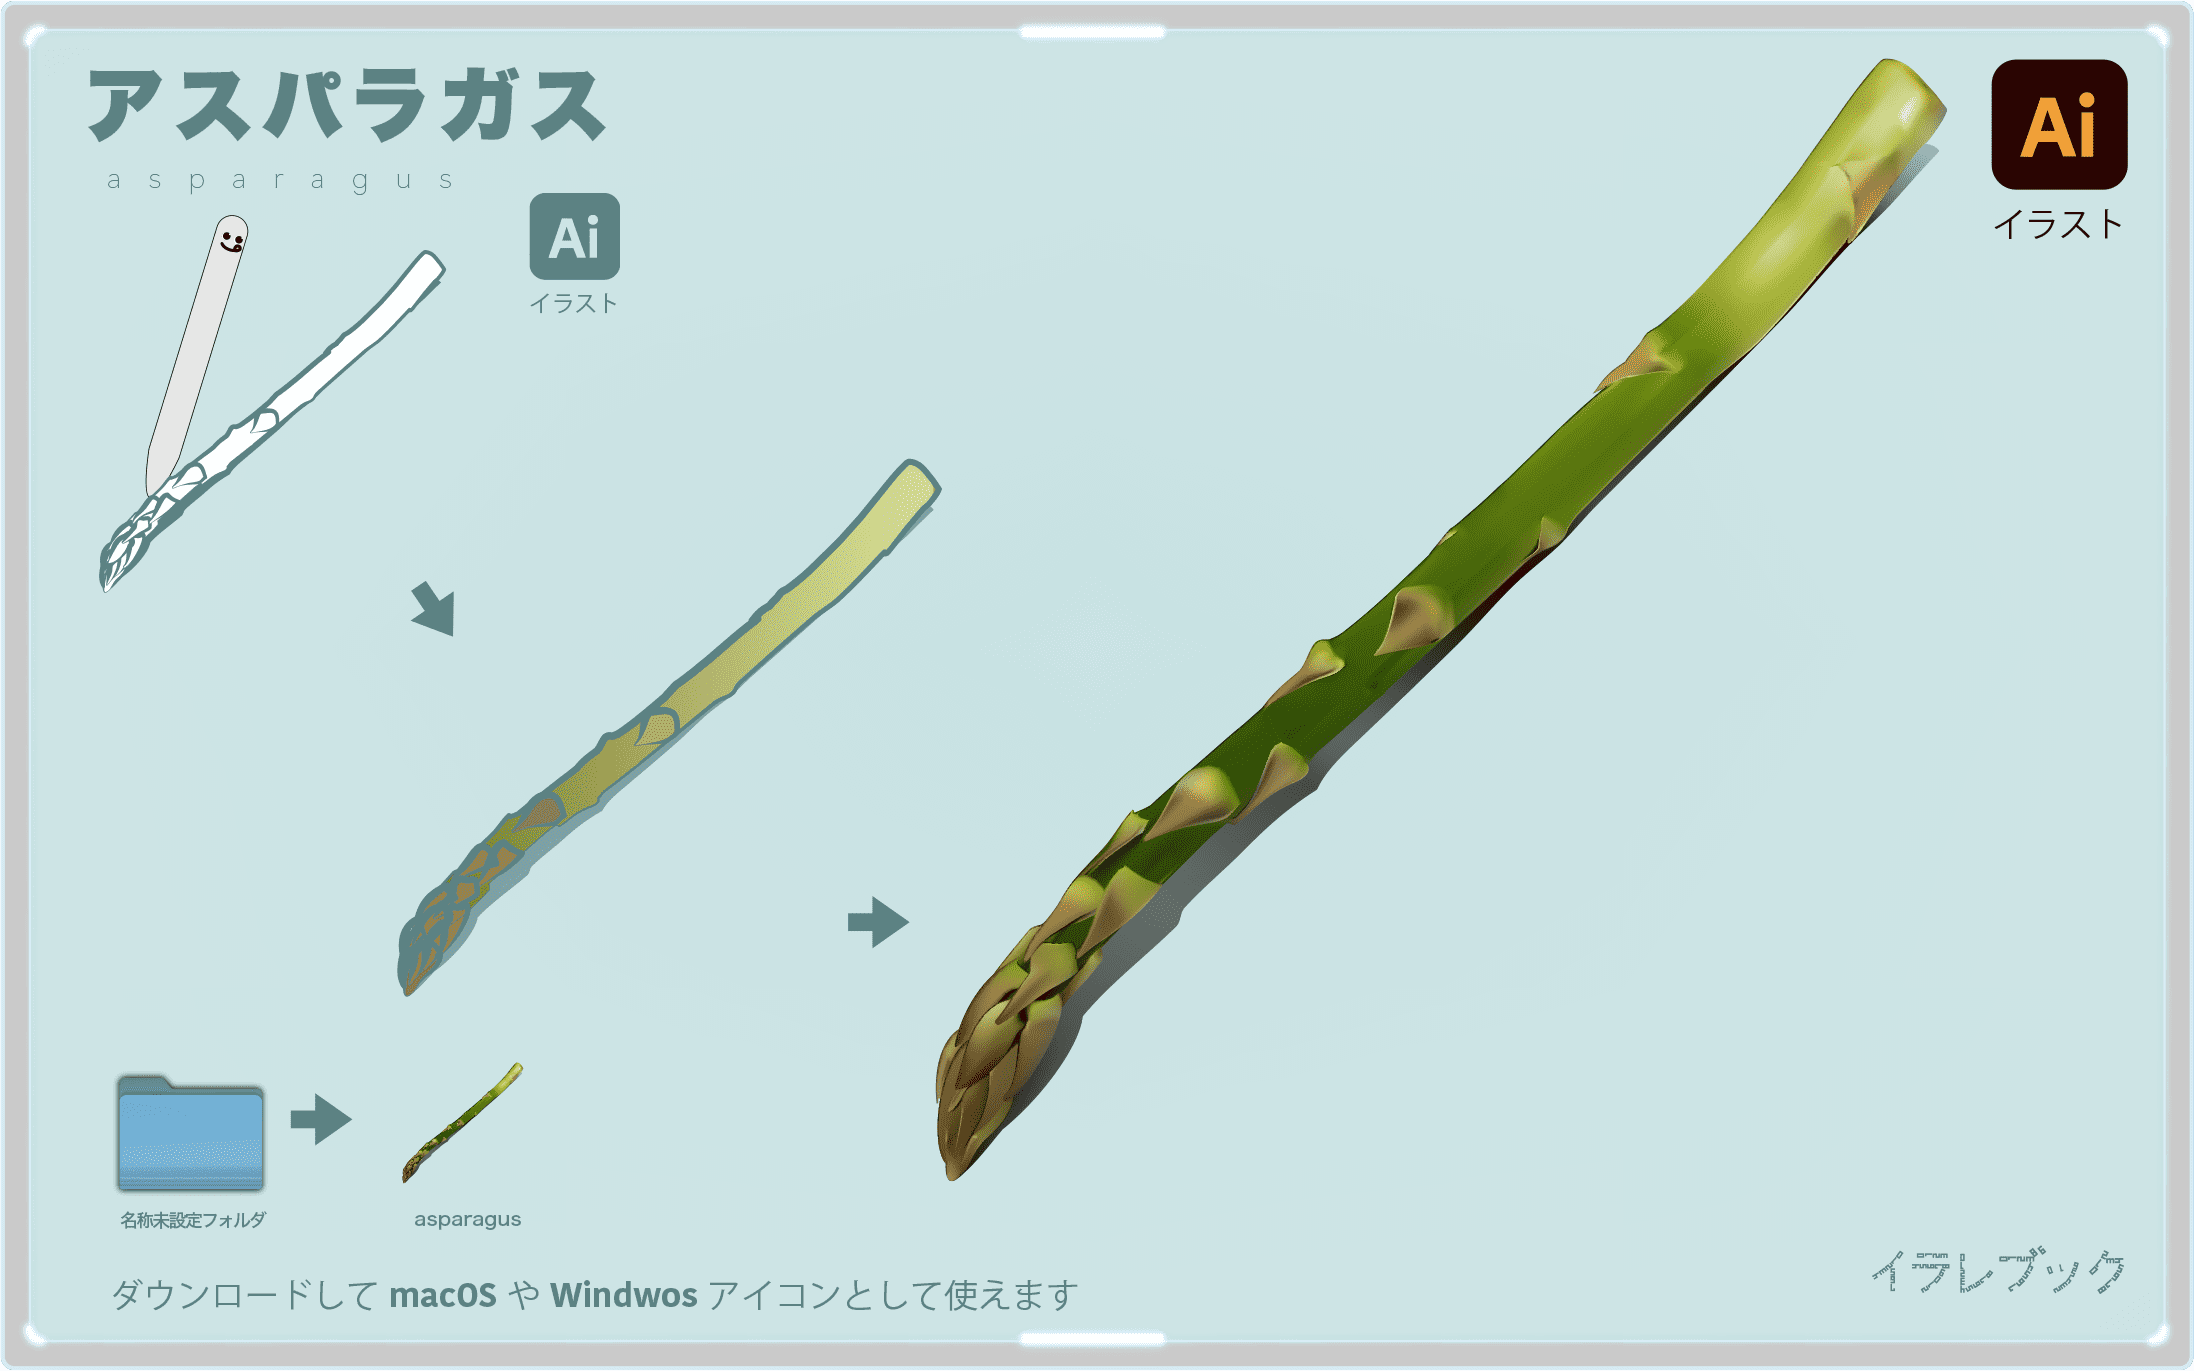 アスパラガスイラスト　asparagus